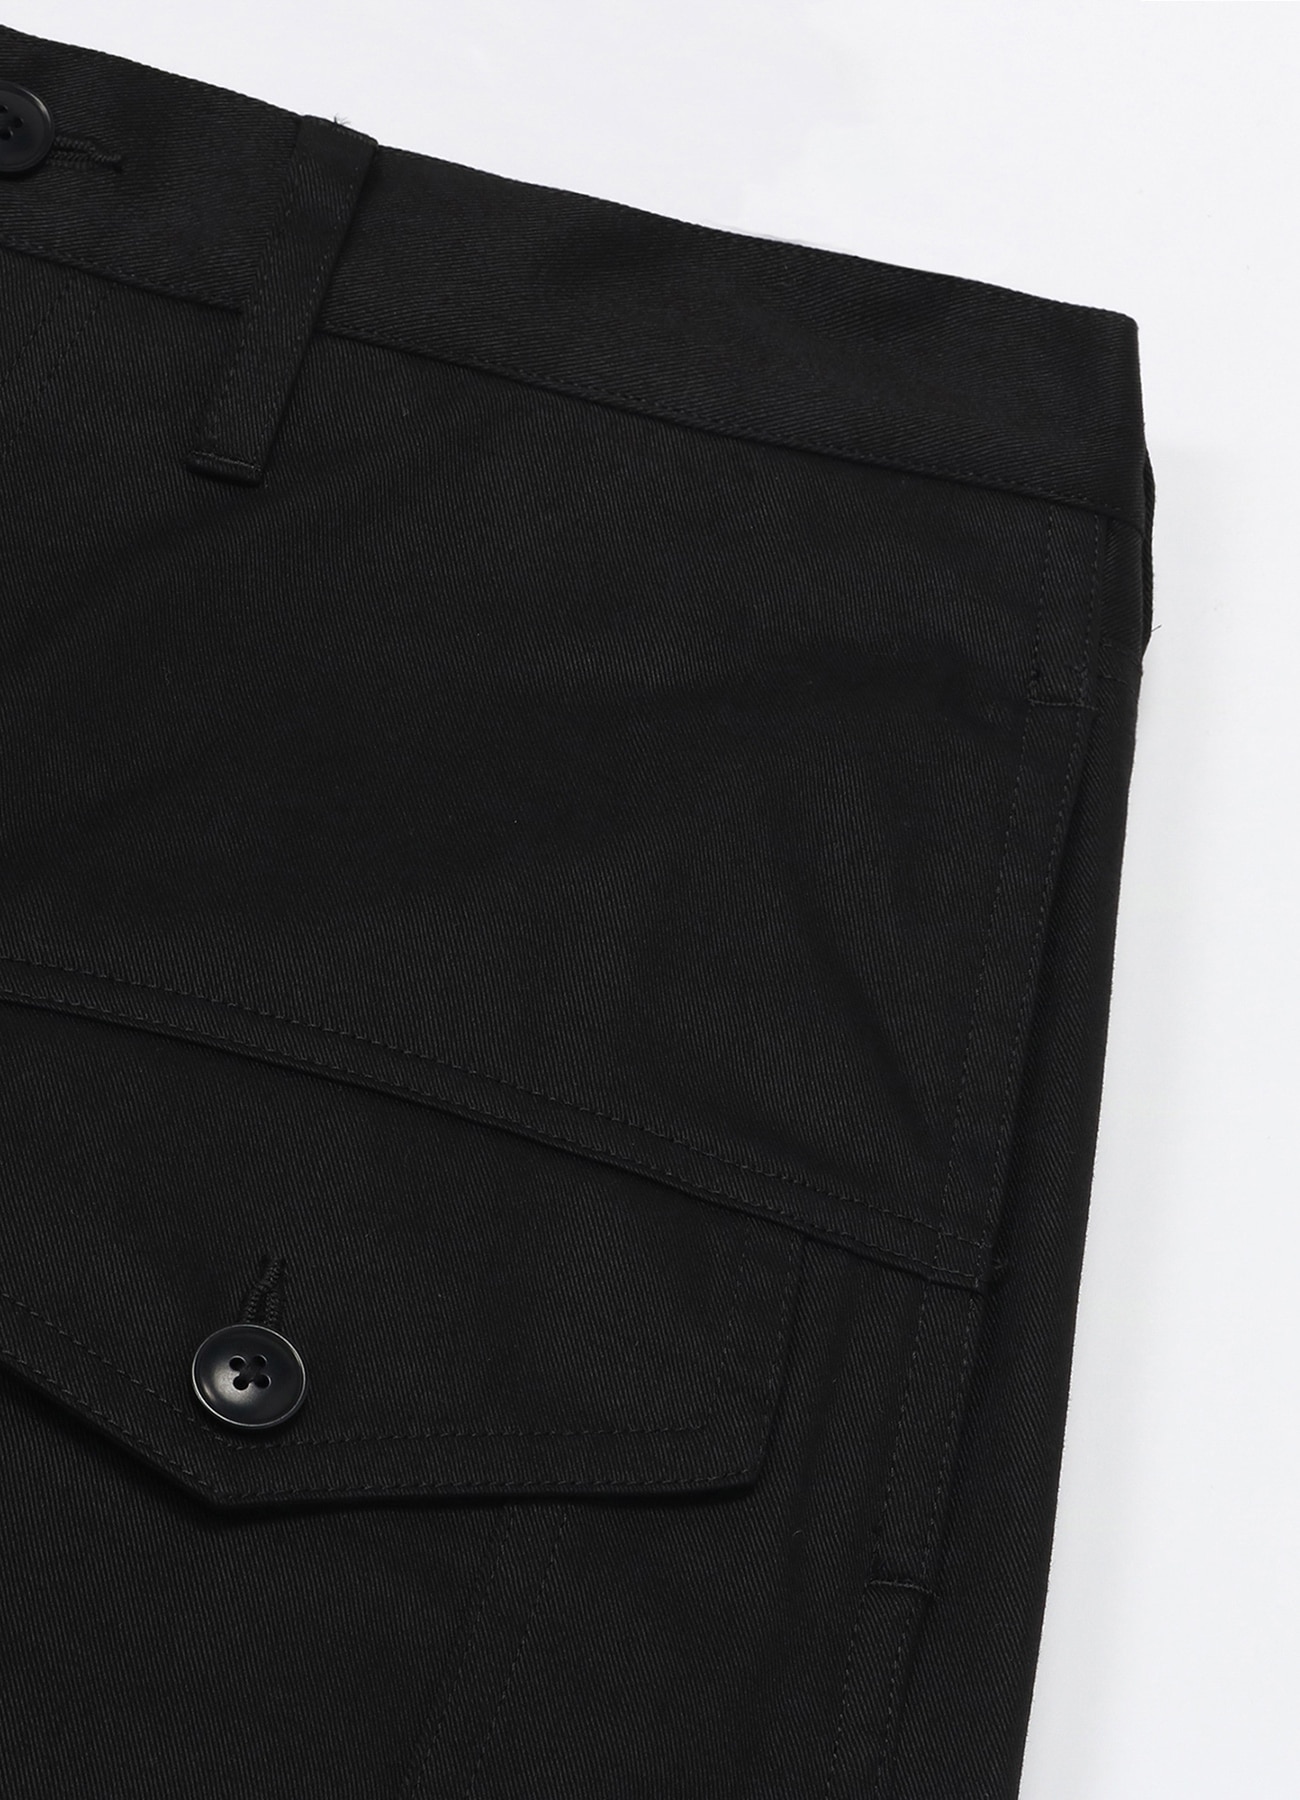 Cotton Chino Jeans Silhouette 3rd YOHJI YAMAMOTO Pants(XS YAMAMOTO｜WILDSIDE BLACK): [Official YOHJI